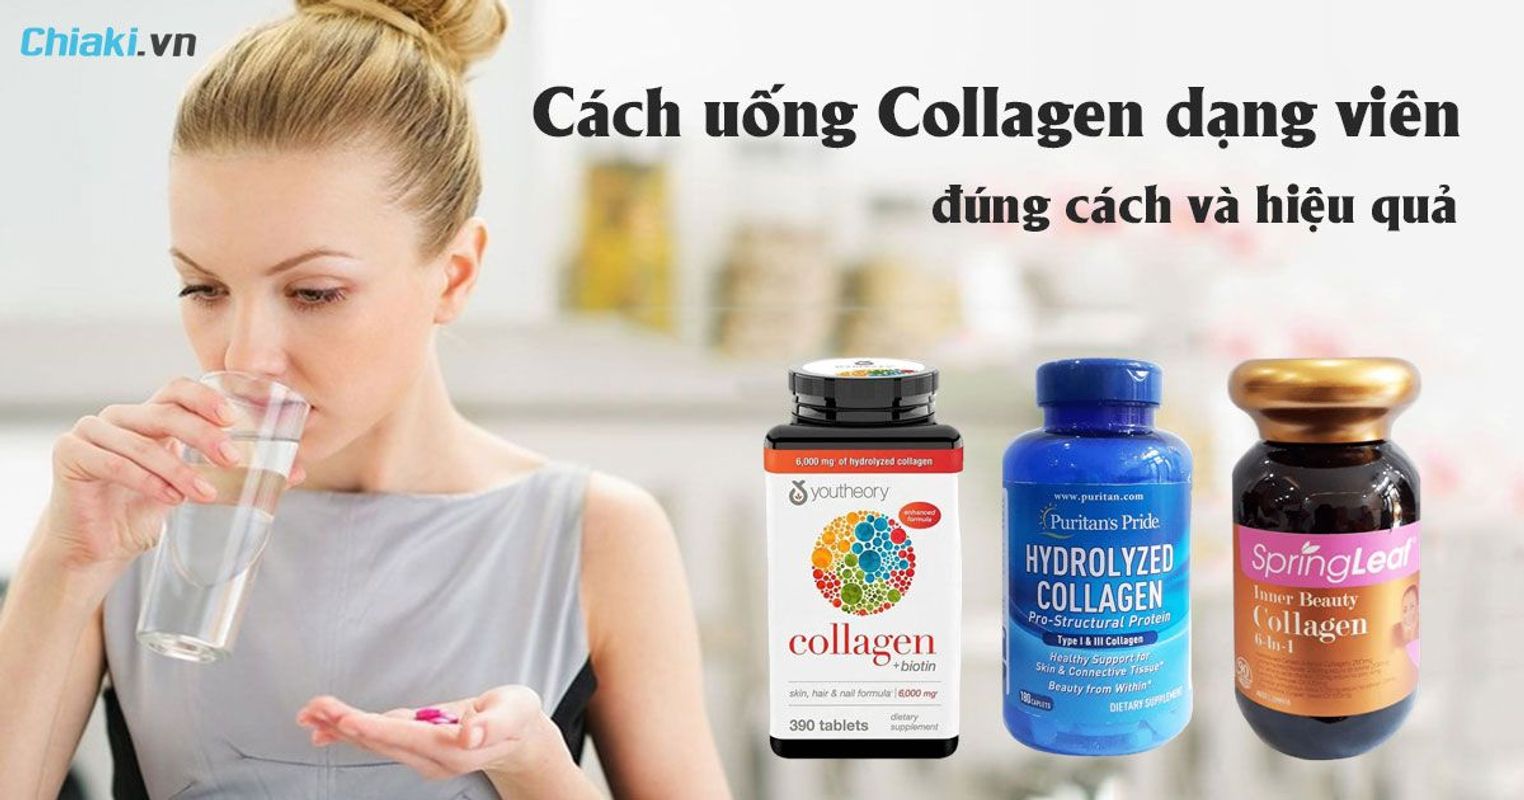 Uống Collagen Dạng Viên Khi Nào Là Tốt Nhất? Bí Quyết Để Đạt Hiệu Quả Tối Ưu